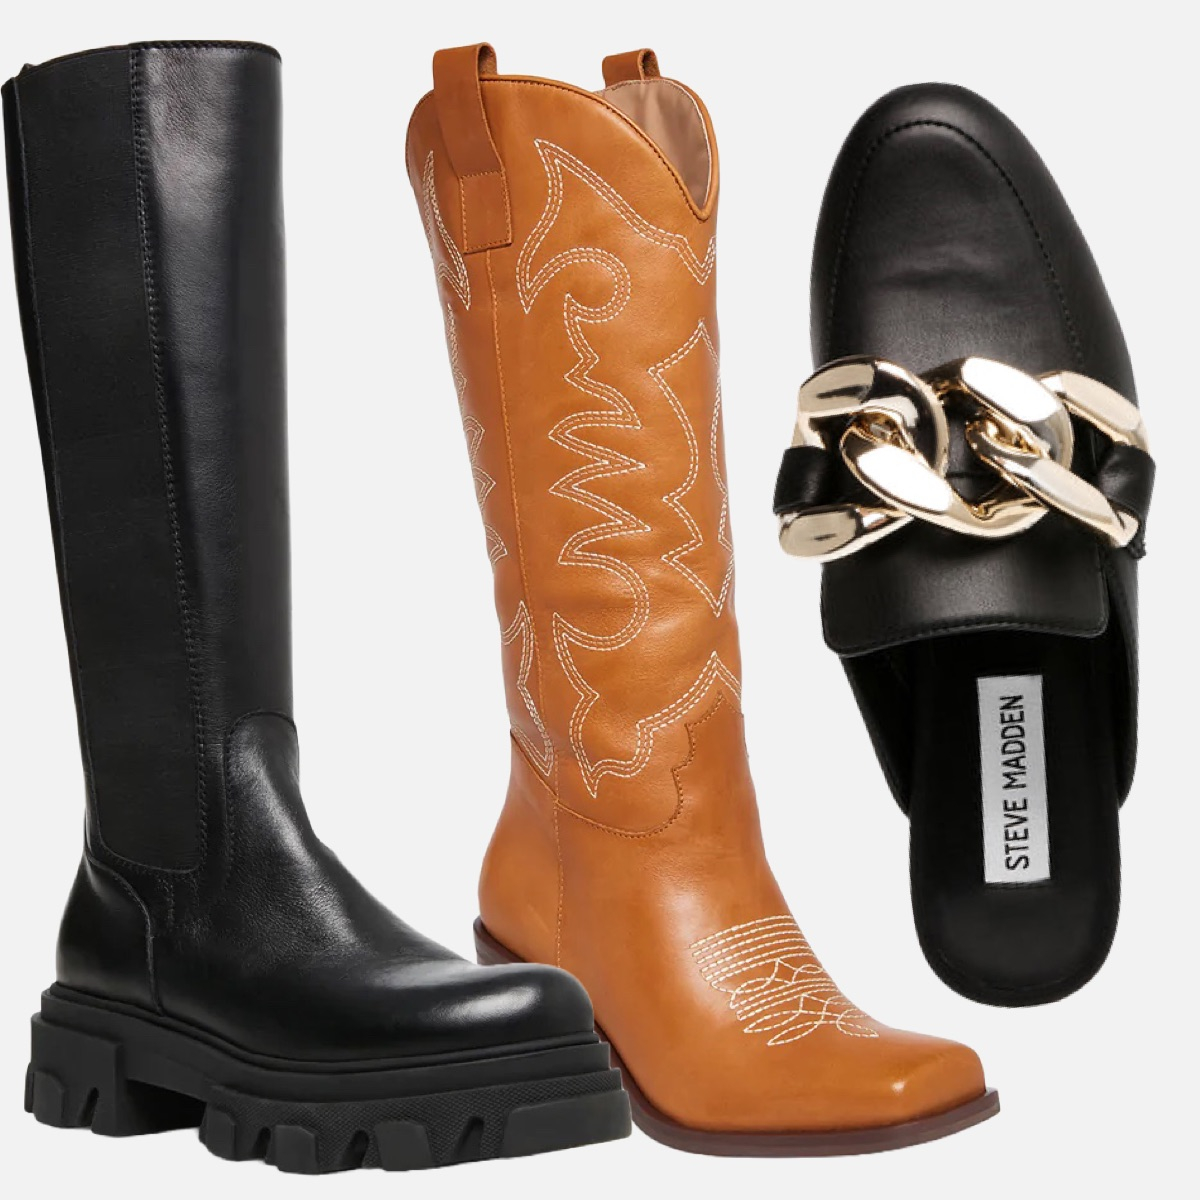 Steve Madden Extra 40% Off Sale: $130 Boots $36 & Deals - E! Online